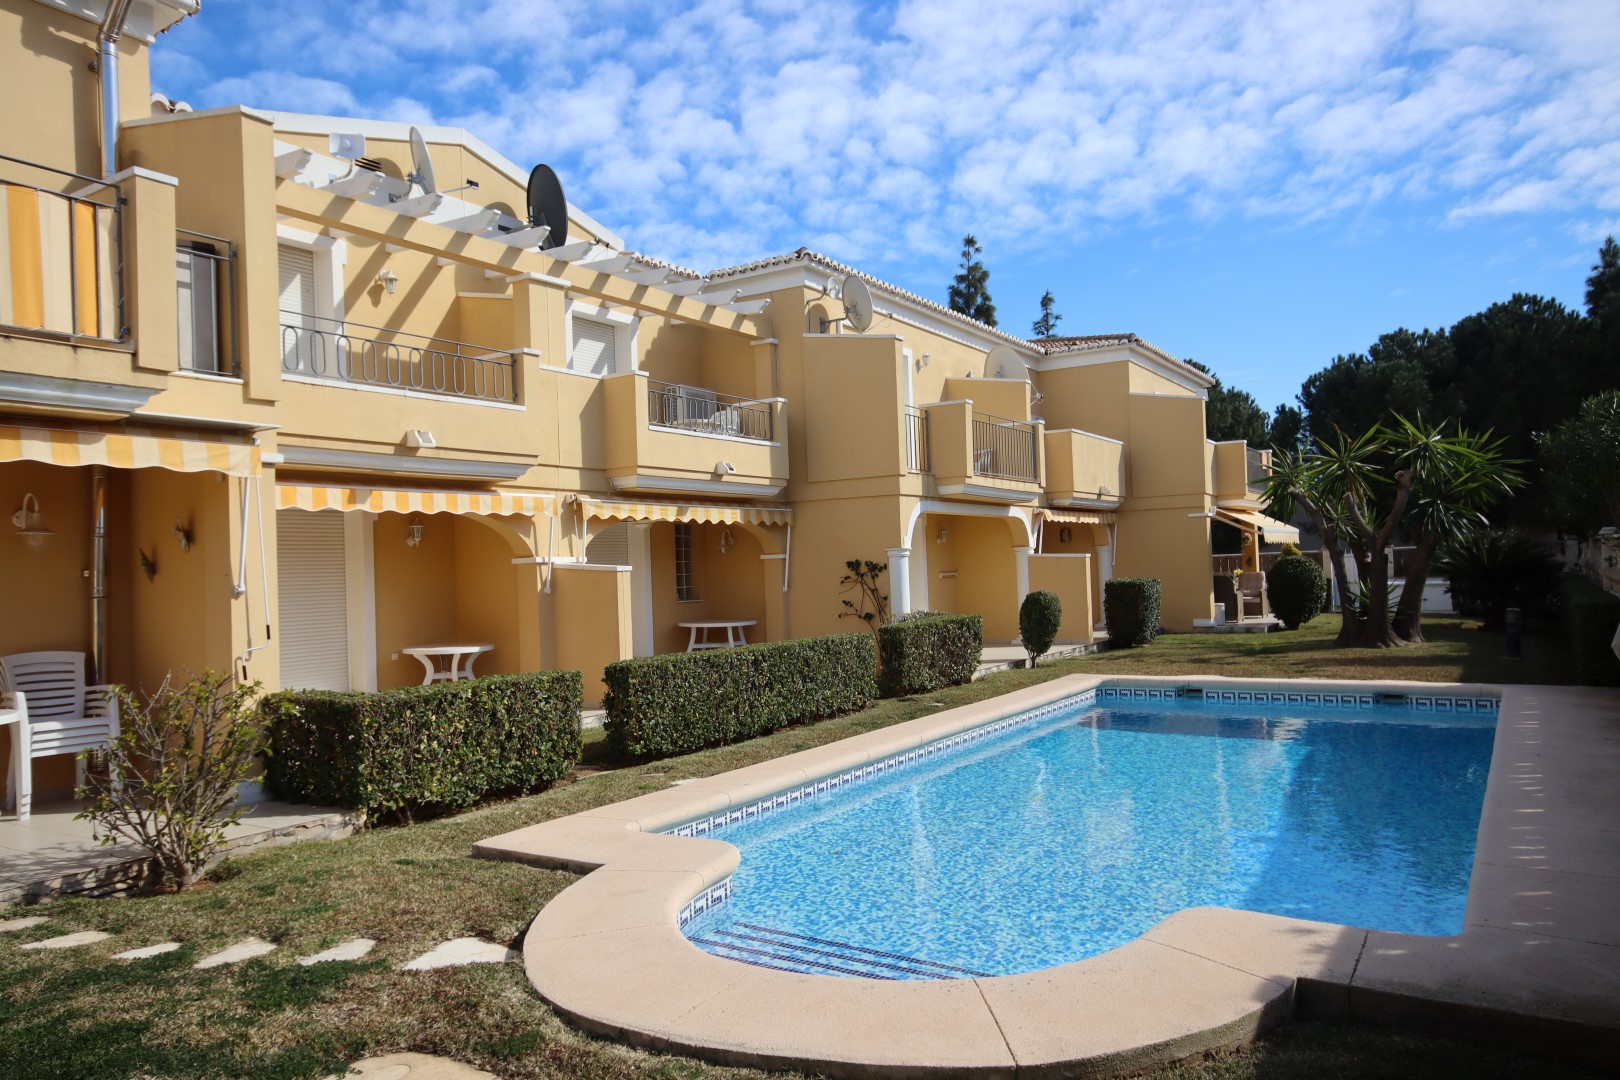 Villa, 3 bedrooms, Pool, Els Poblets